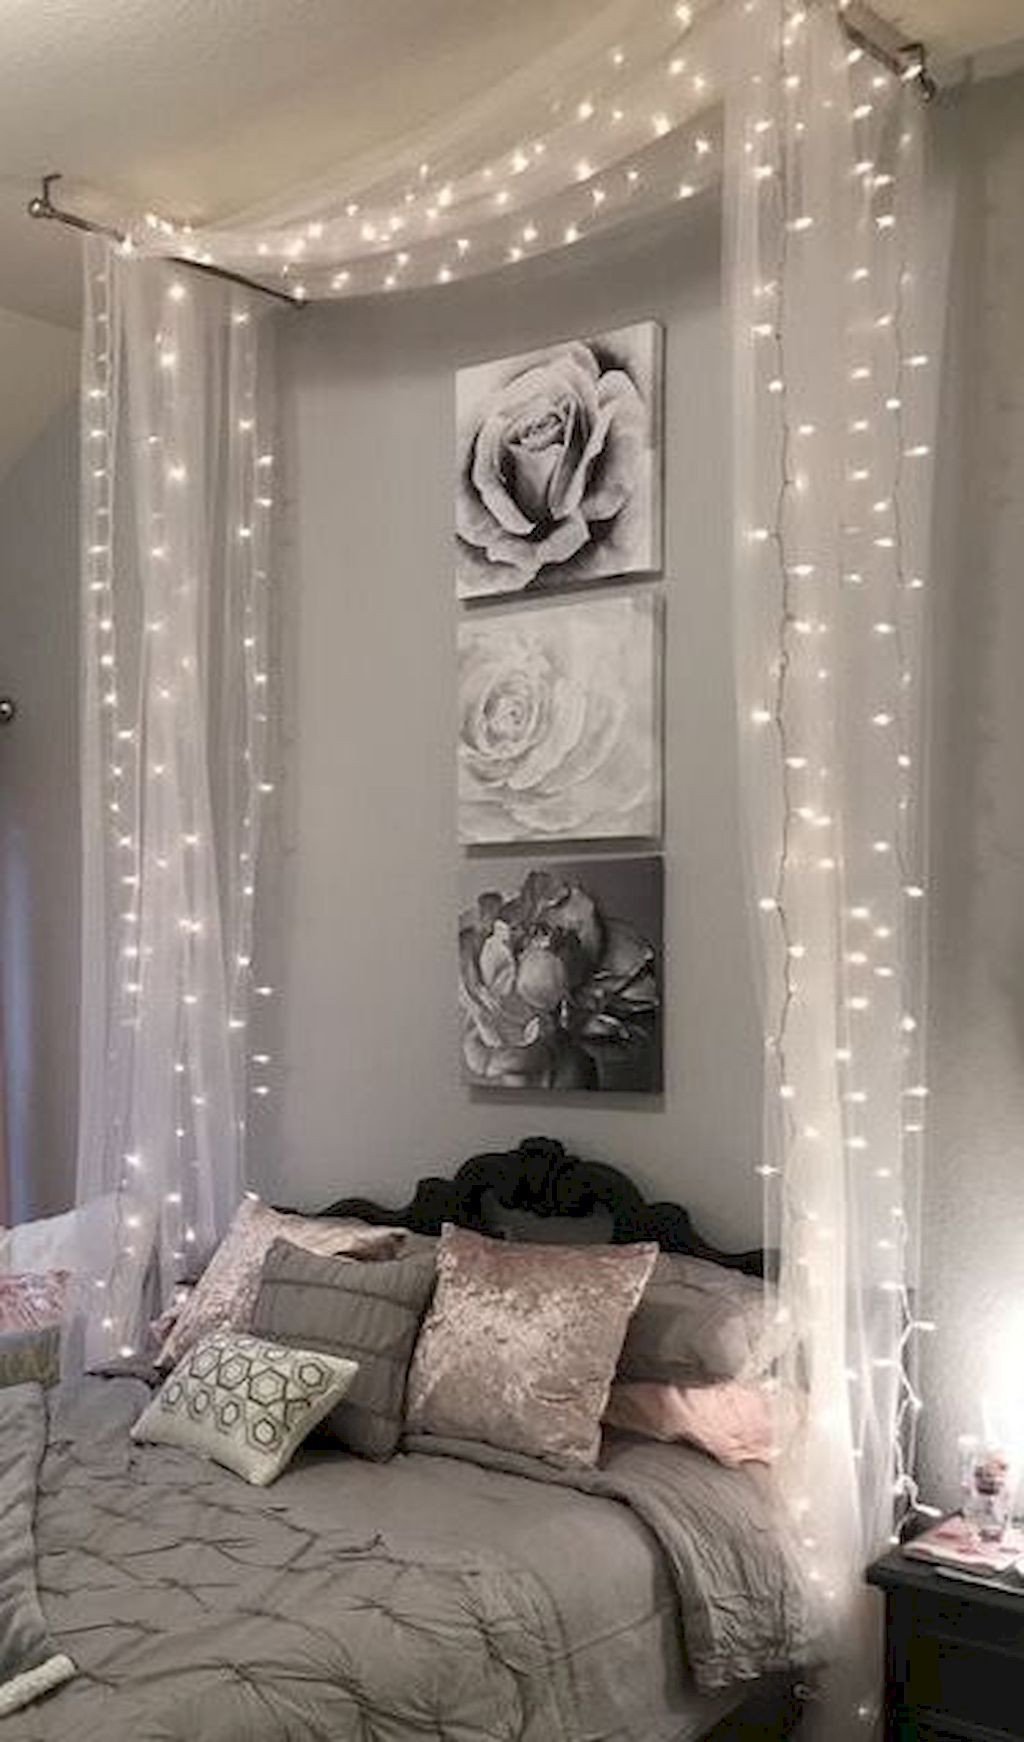 Best String Light for Bedroom New 61 Best Bedroom Decor Ideas to Inspire Succulent Bedroom